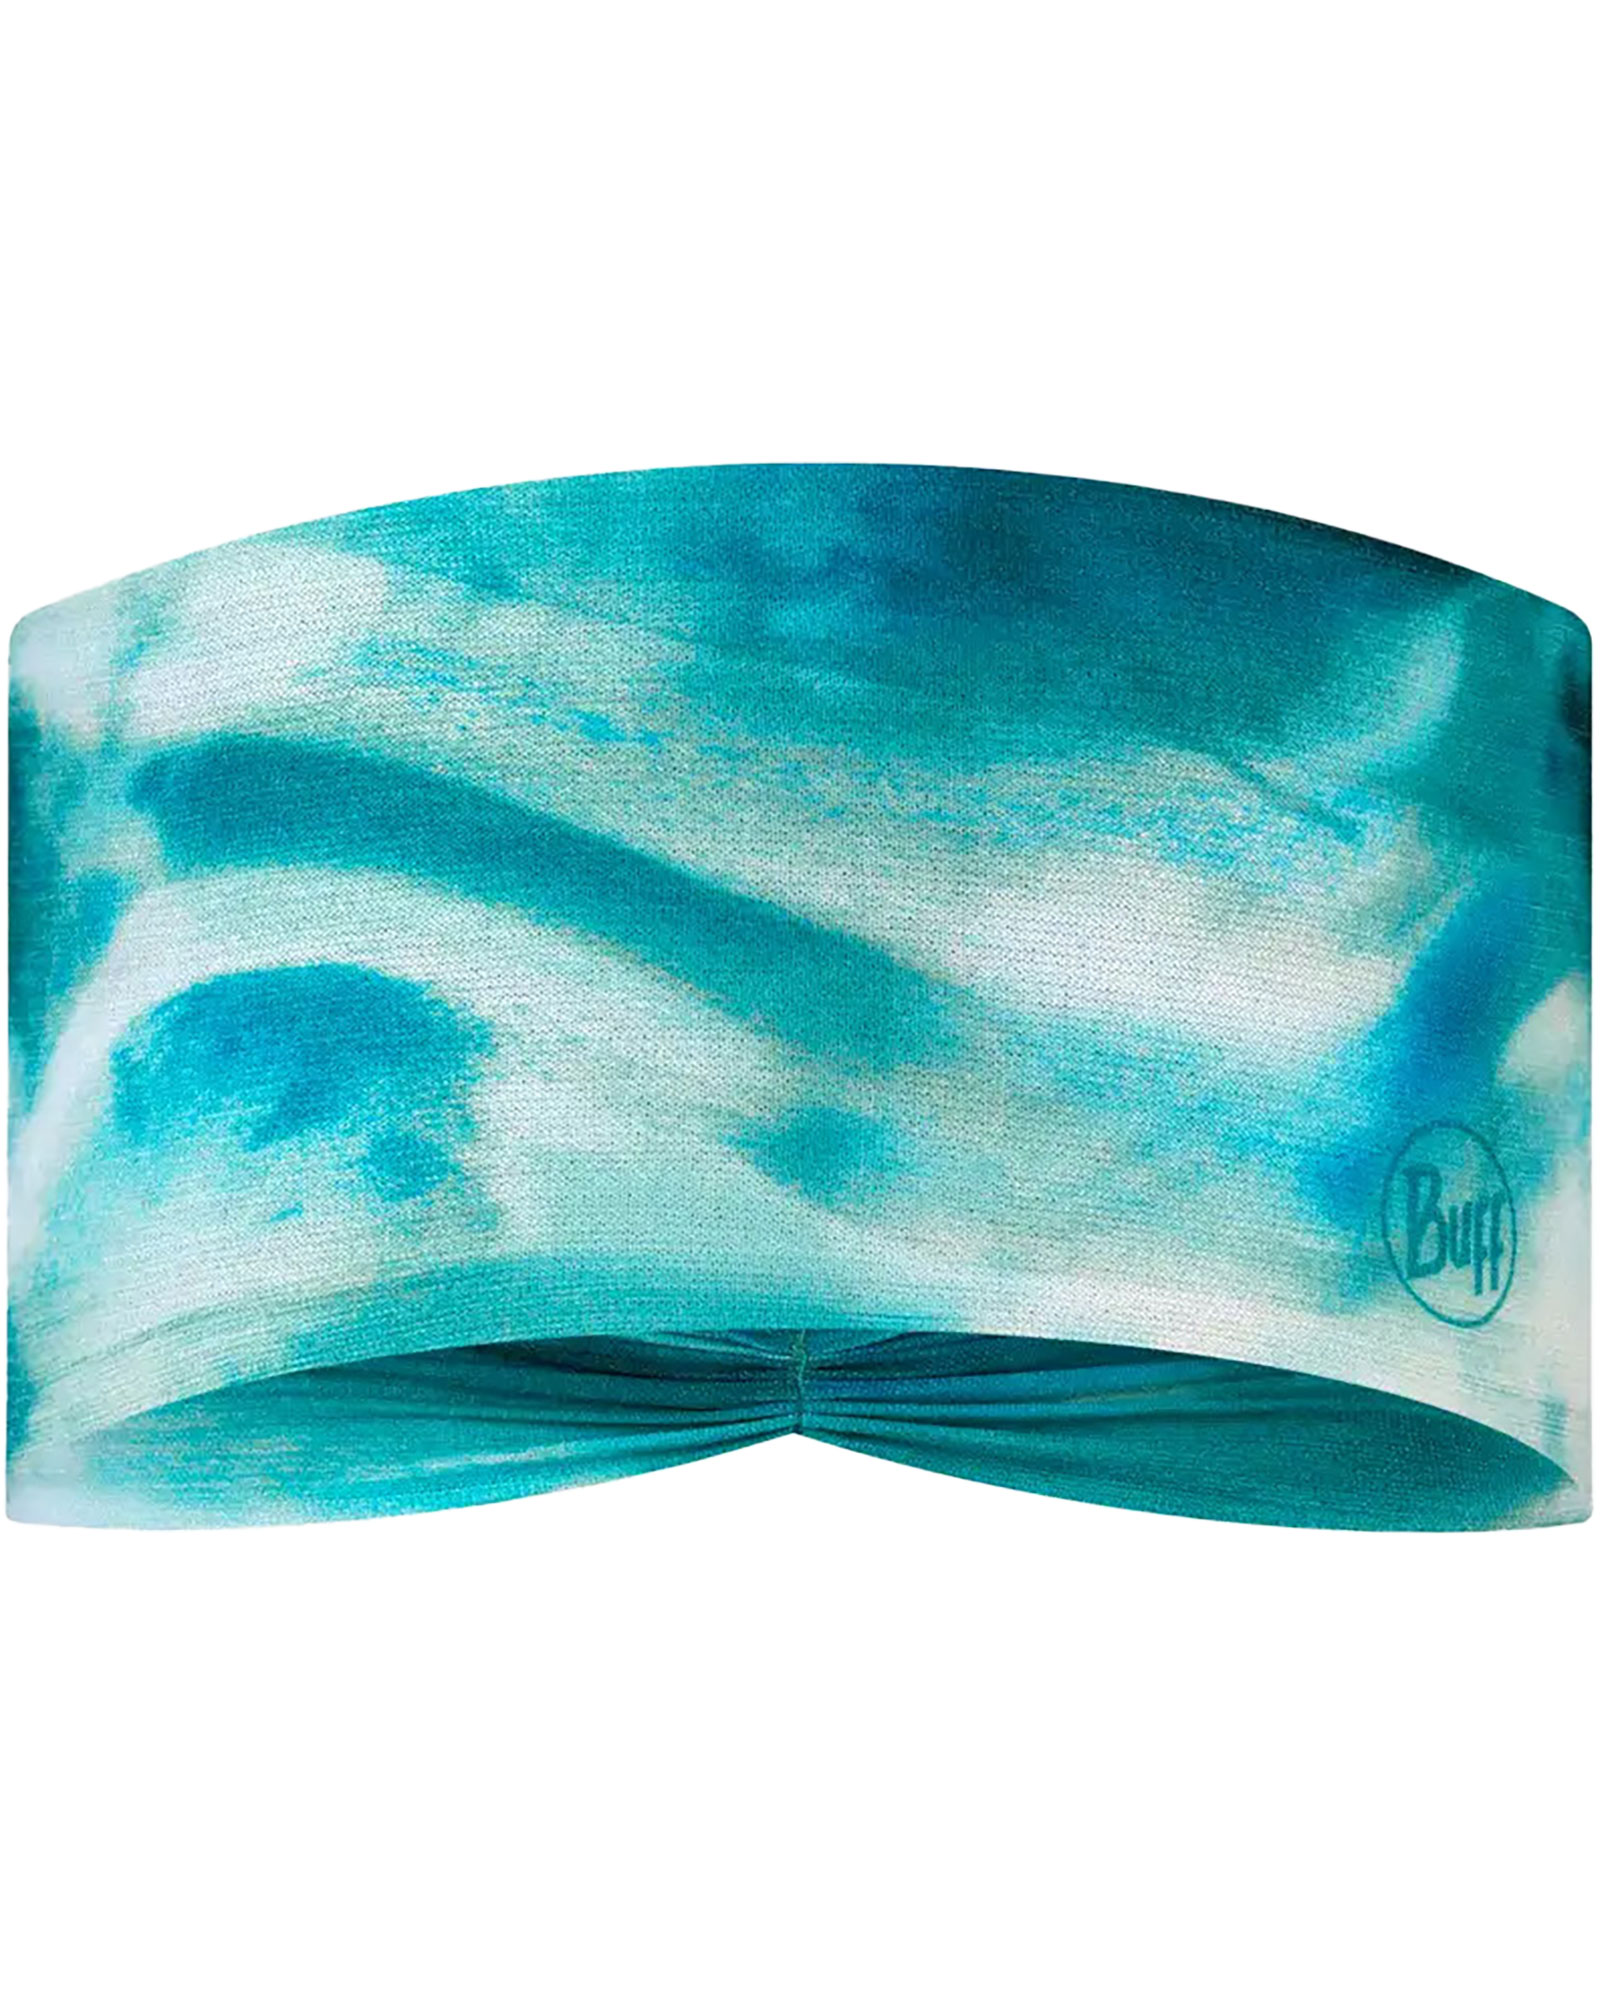 Buff Coolnet UV Eclipse Headband - Newa Pool - Newa Pool